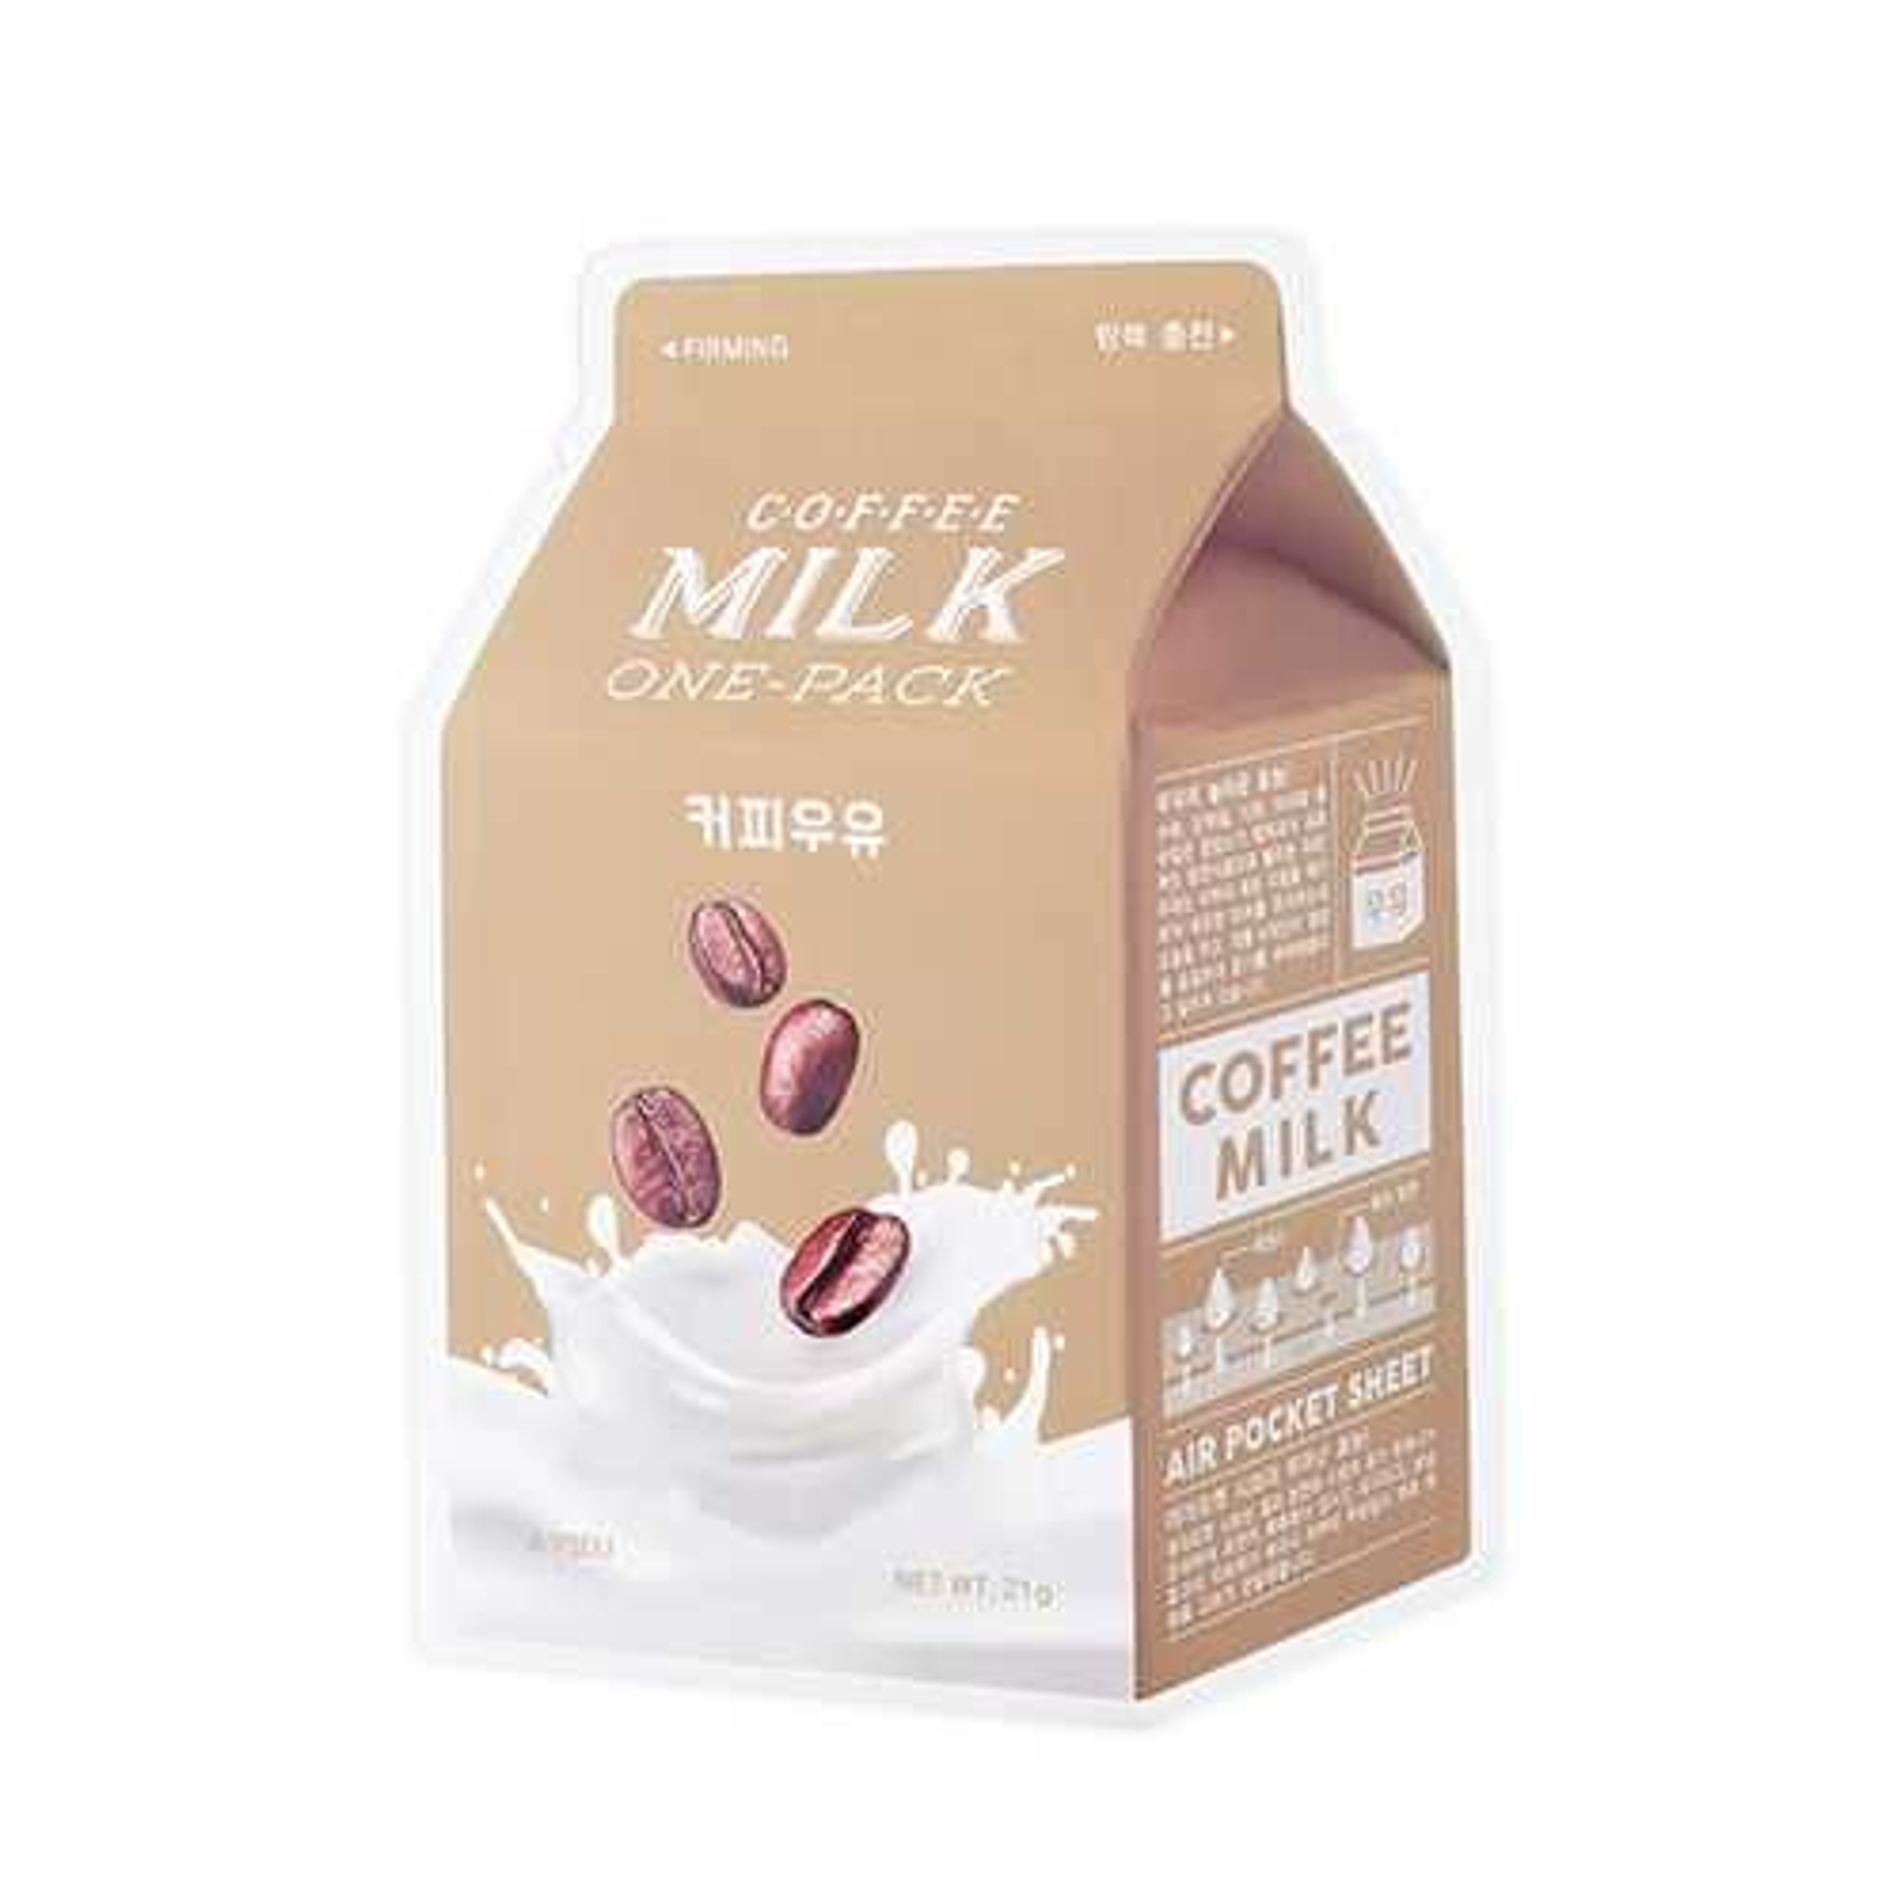 mat-na-giay-chong-lao-hoa-da-a-pieu-coffee-milk-one-pack-2